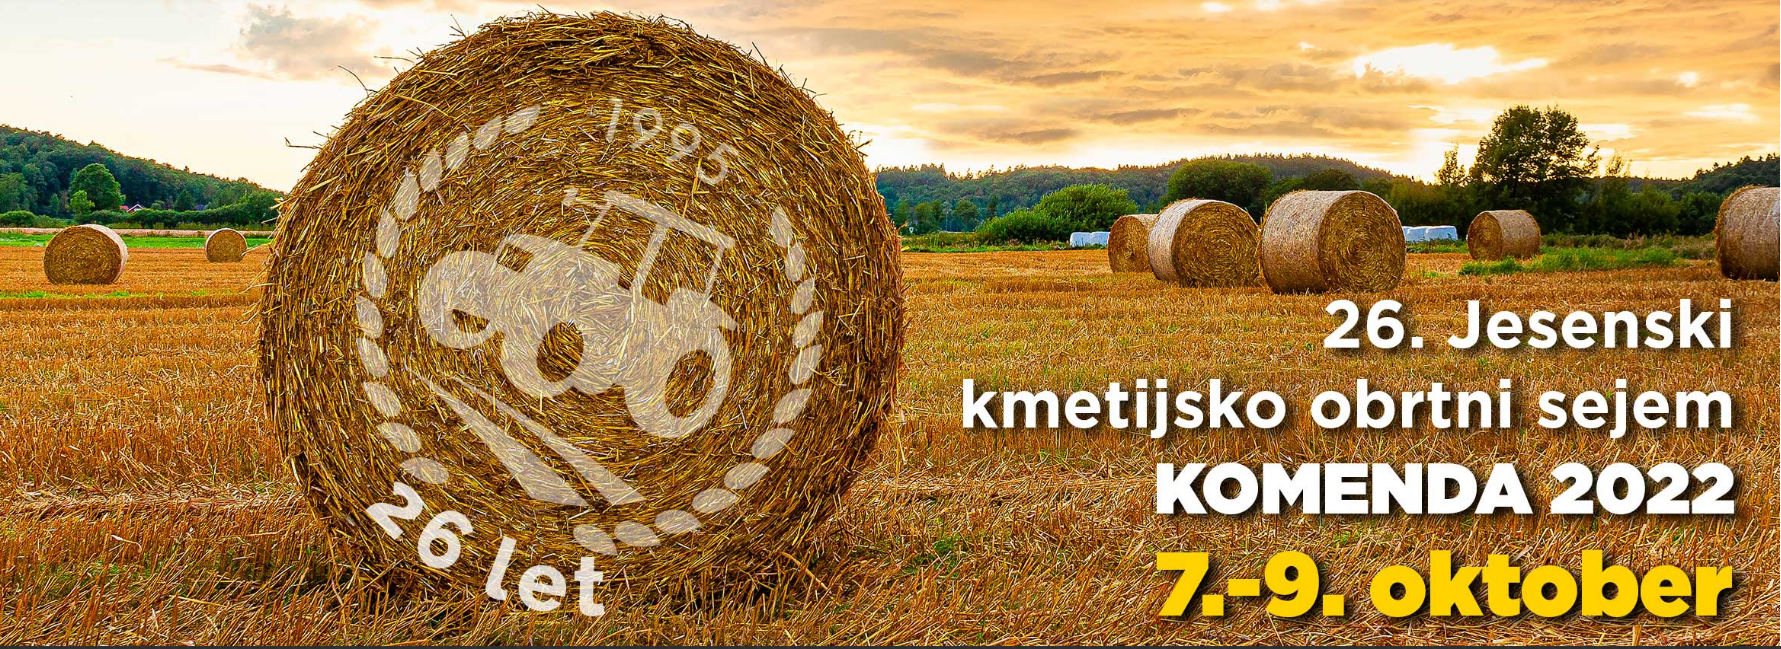 26. Jesenski kmetijsko obrtni sejem Komenda 2022 (hr translation)